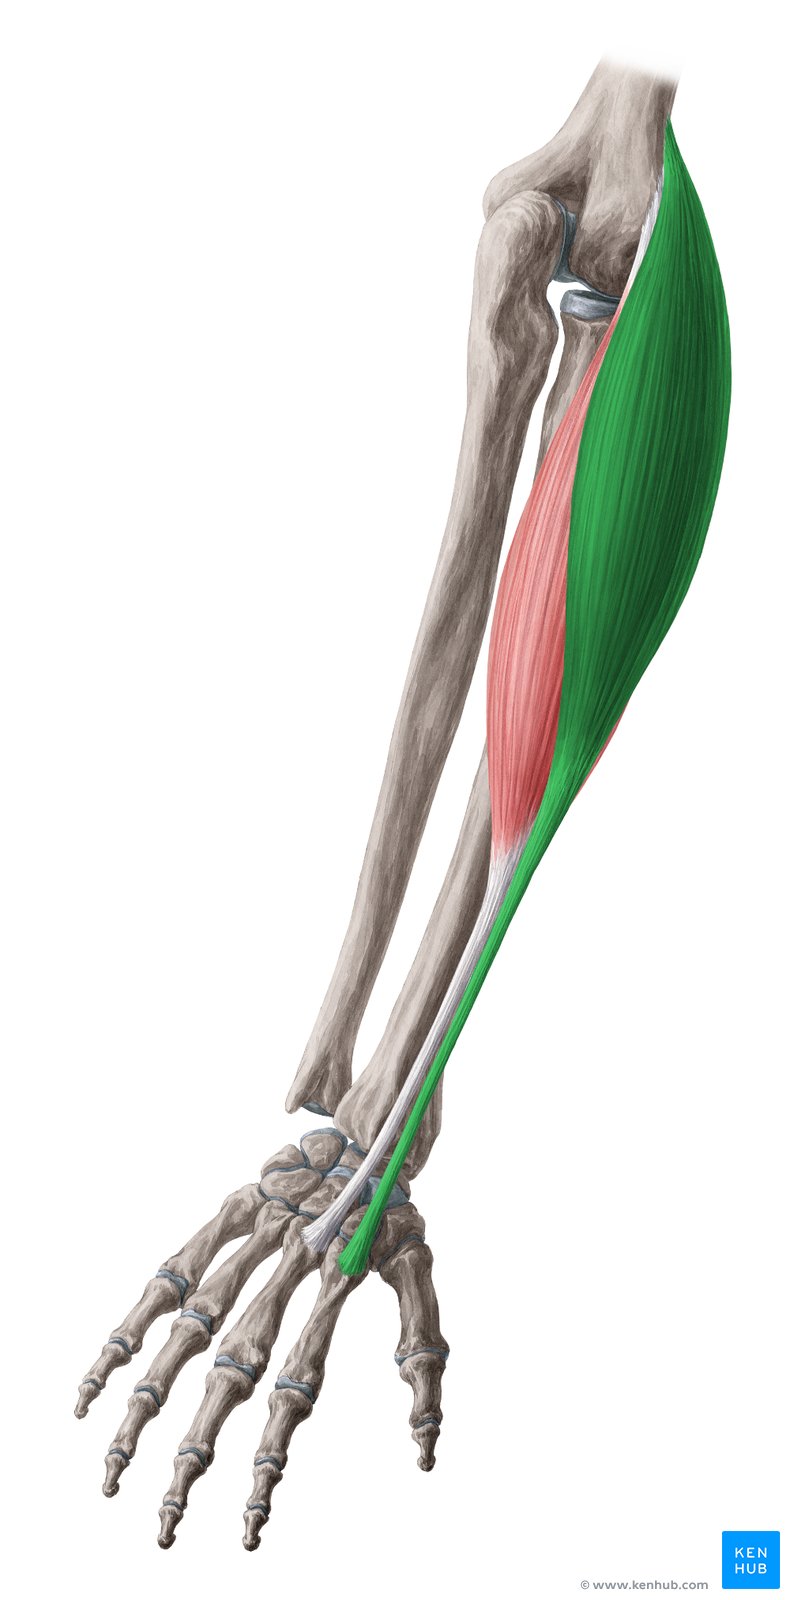 Extensor carpi radialis longus - dorsal view